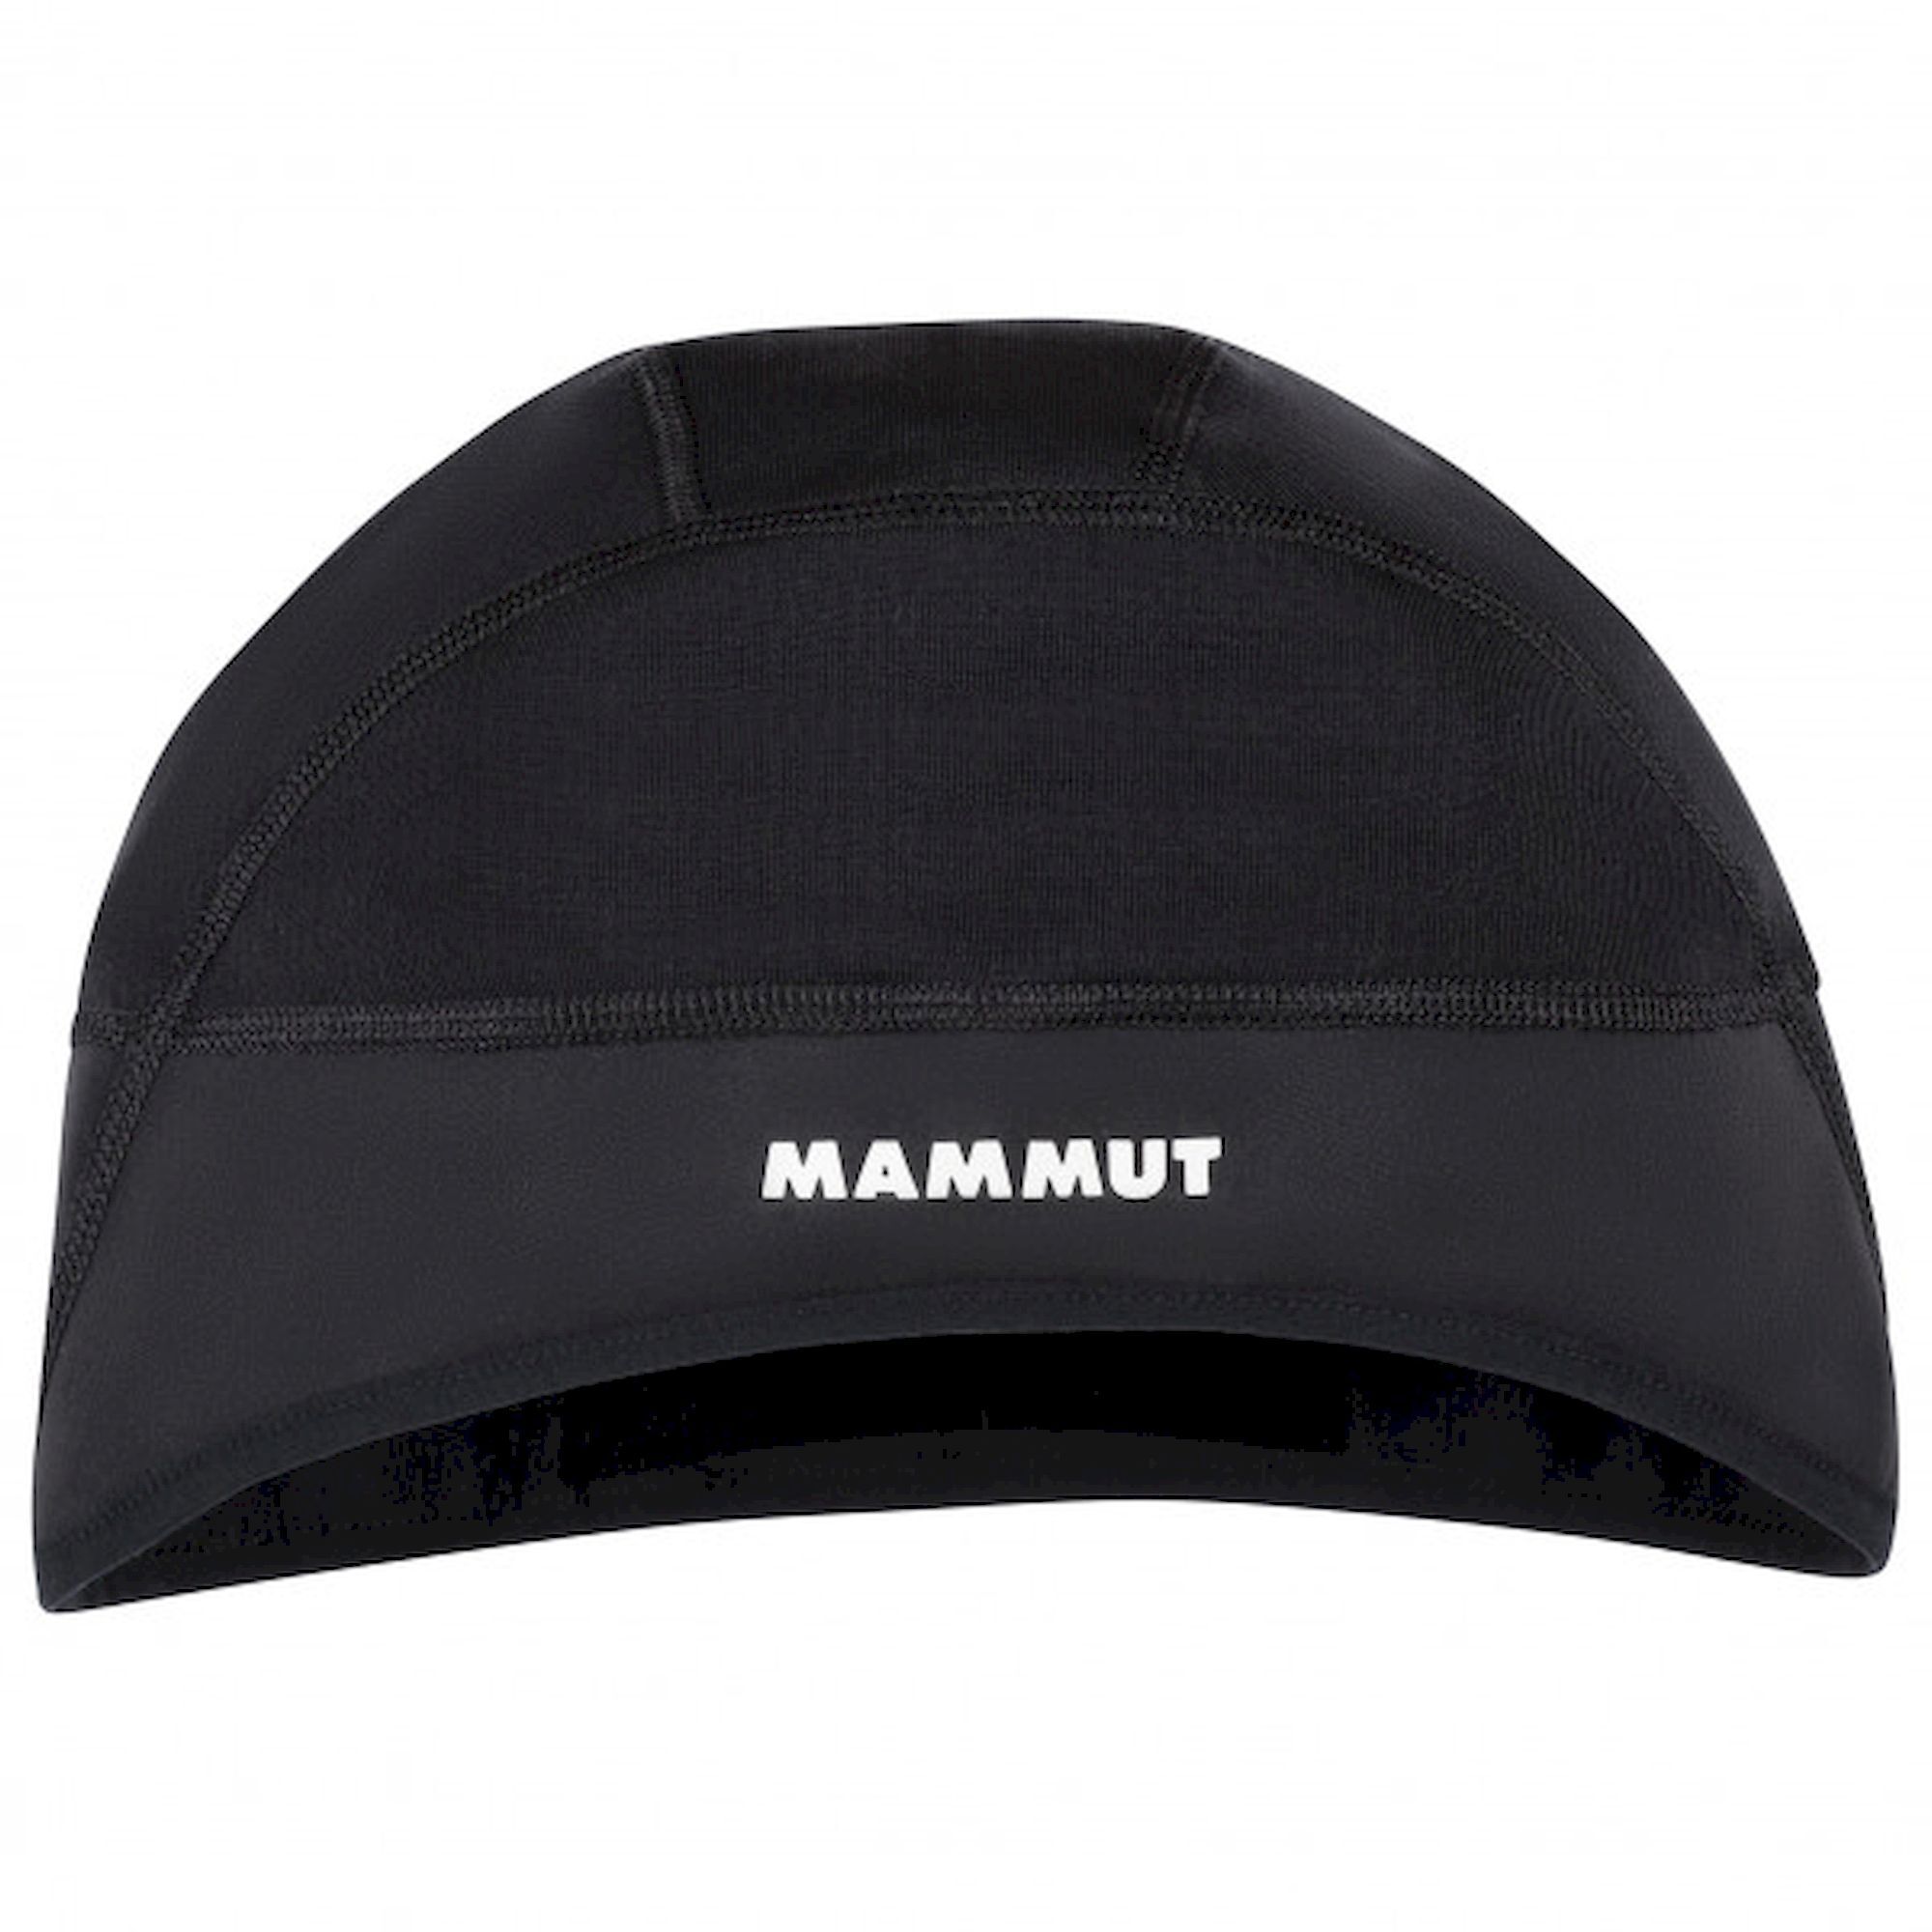 Mammut WS Helm Cap - Pipo - Miehet